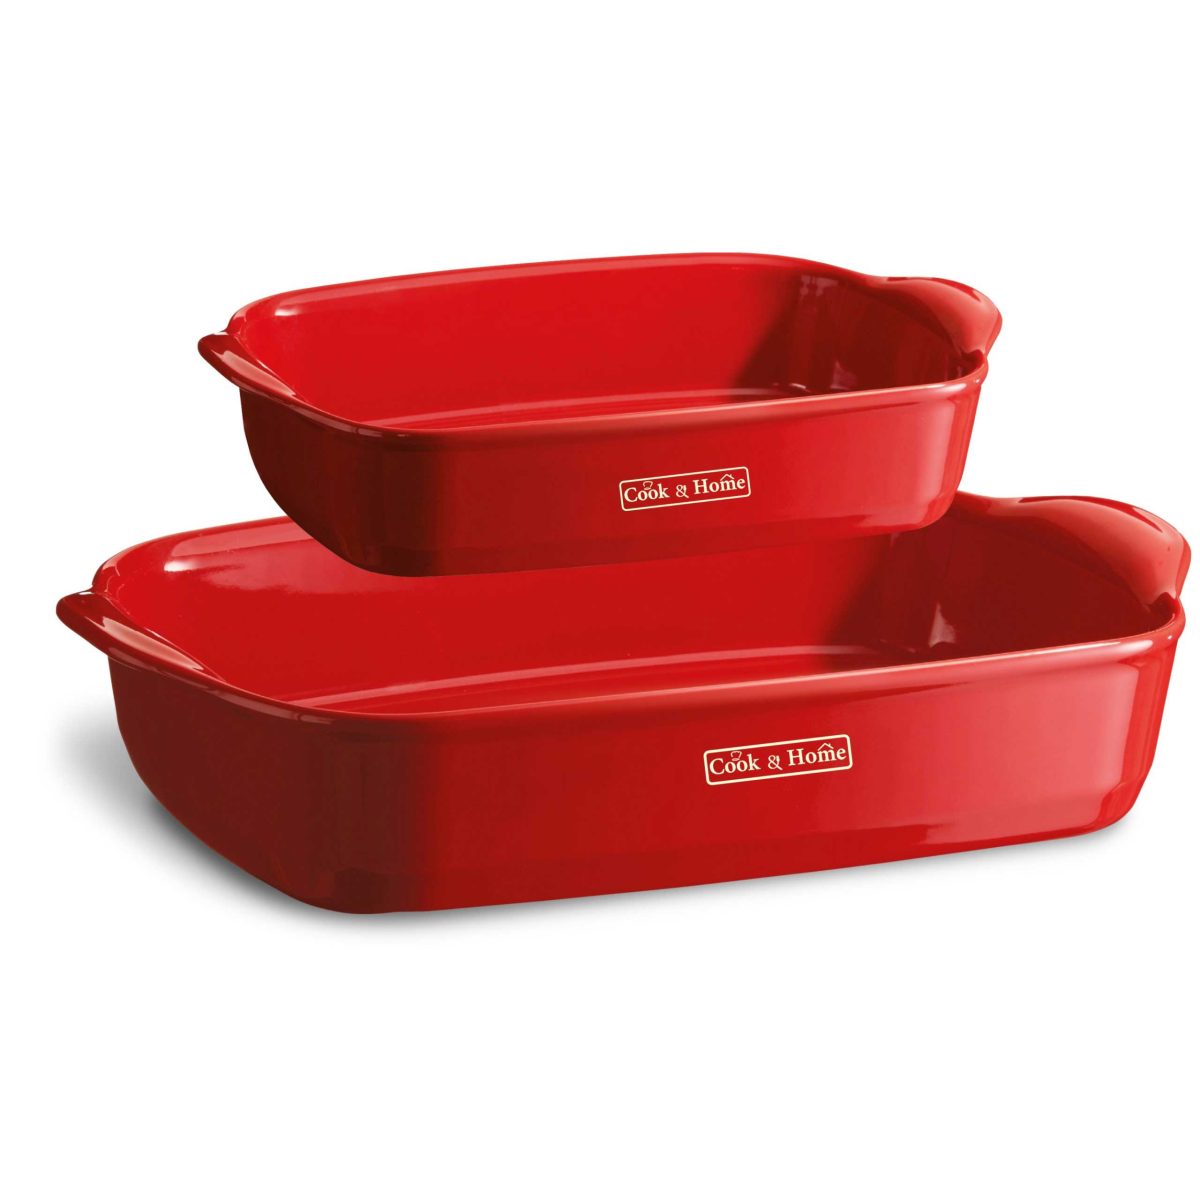 Комплект от 2 броя керамични правоъгълни форми за печене EMILE HENRY Cook & Home - EH 9650-34 + EH 9652-34, червен